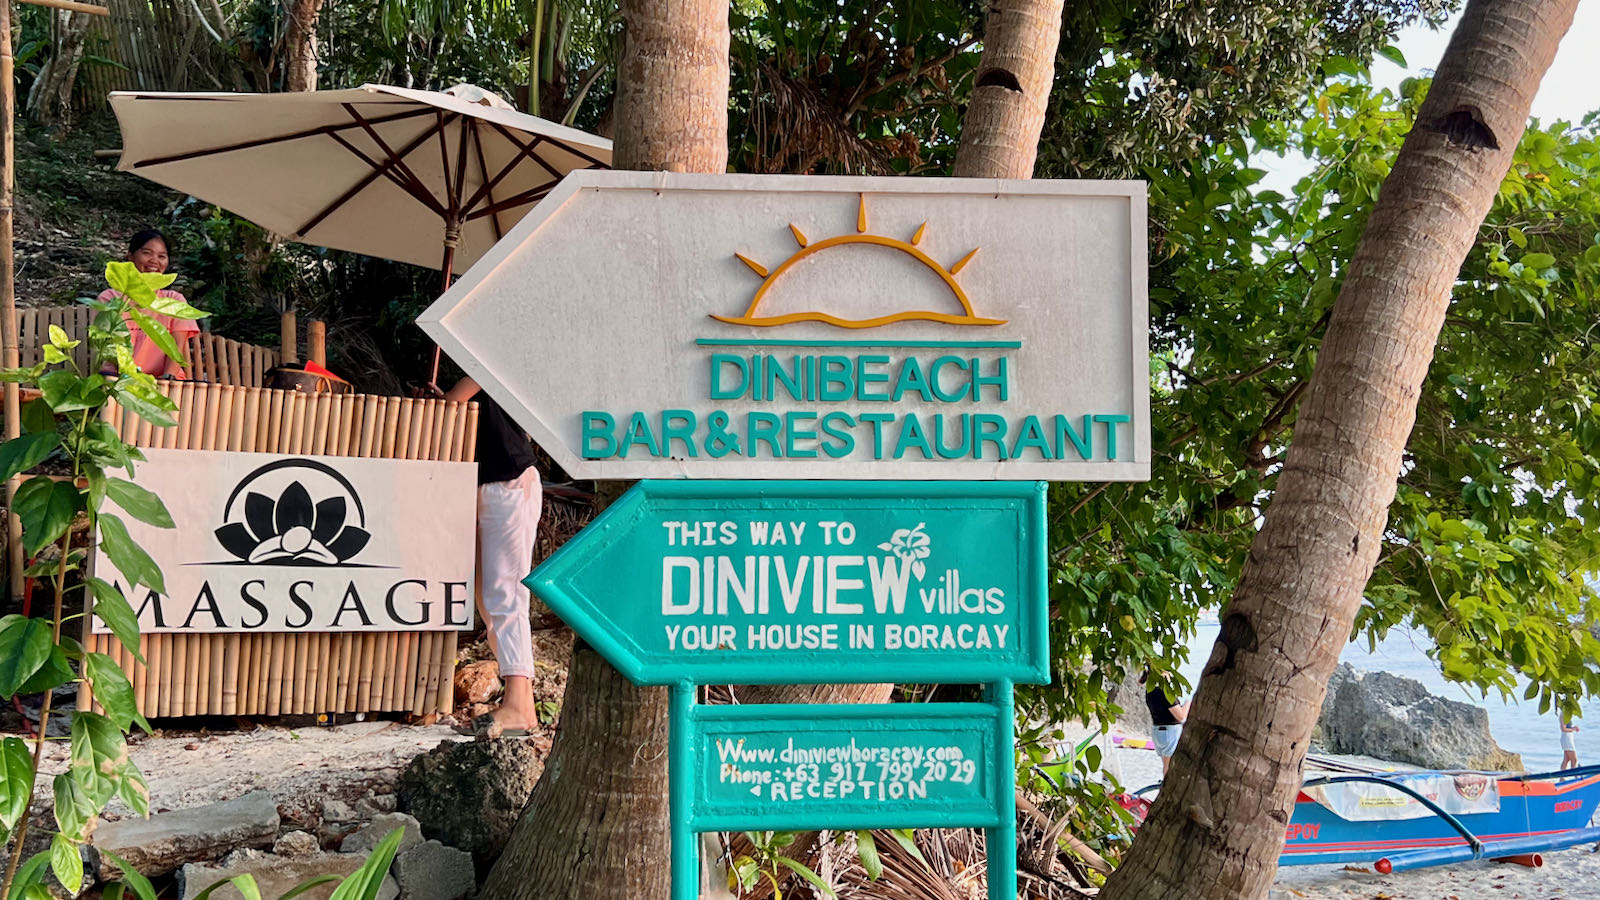 Dinibeach Bar Boracay